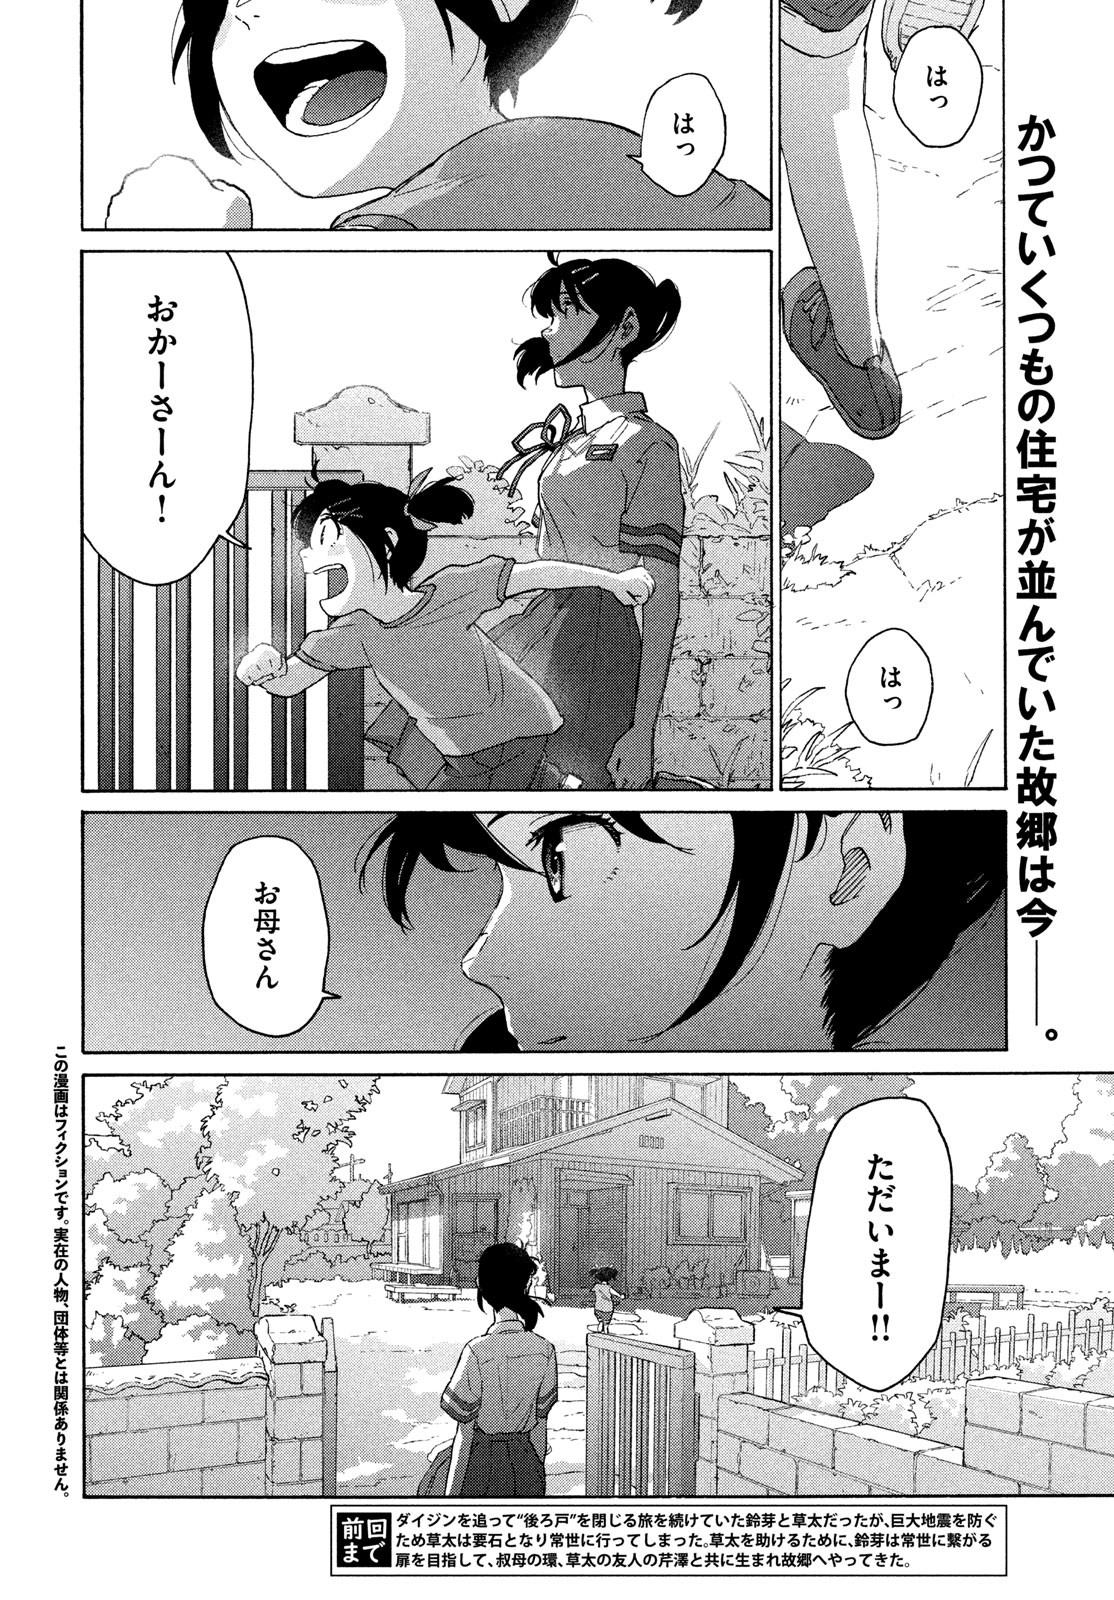 Suzume no Tojimari - Chapter 13 - Page 2